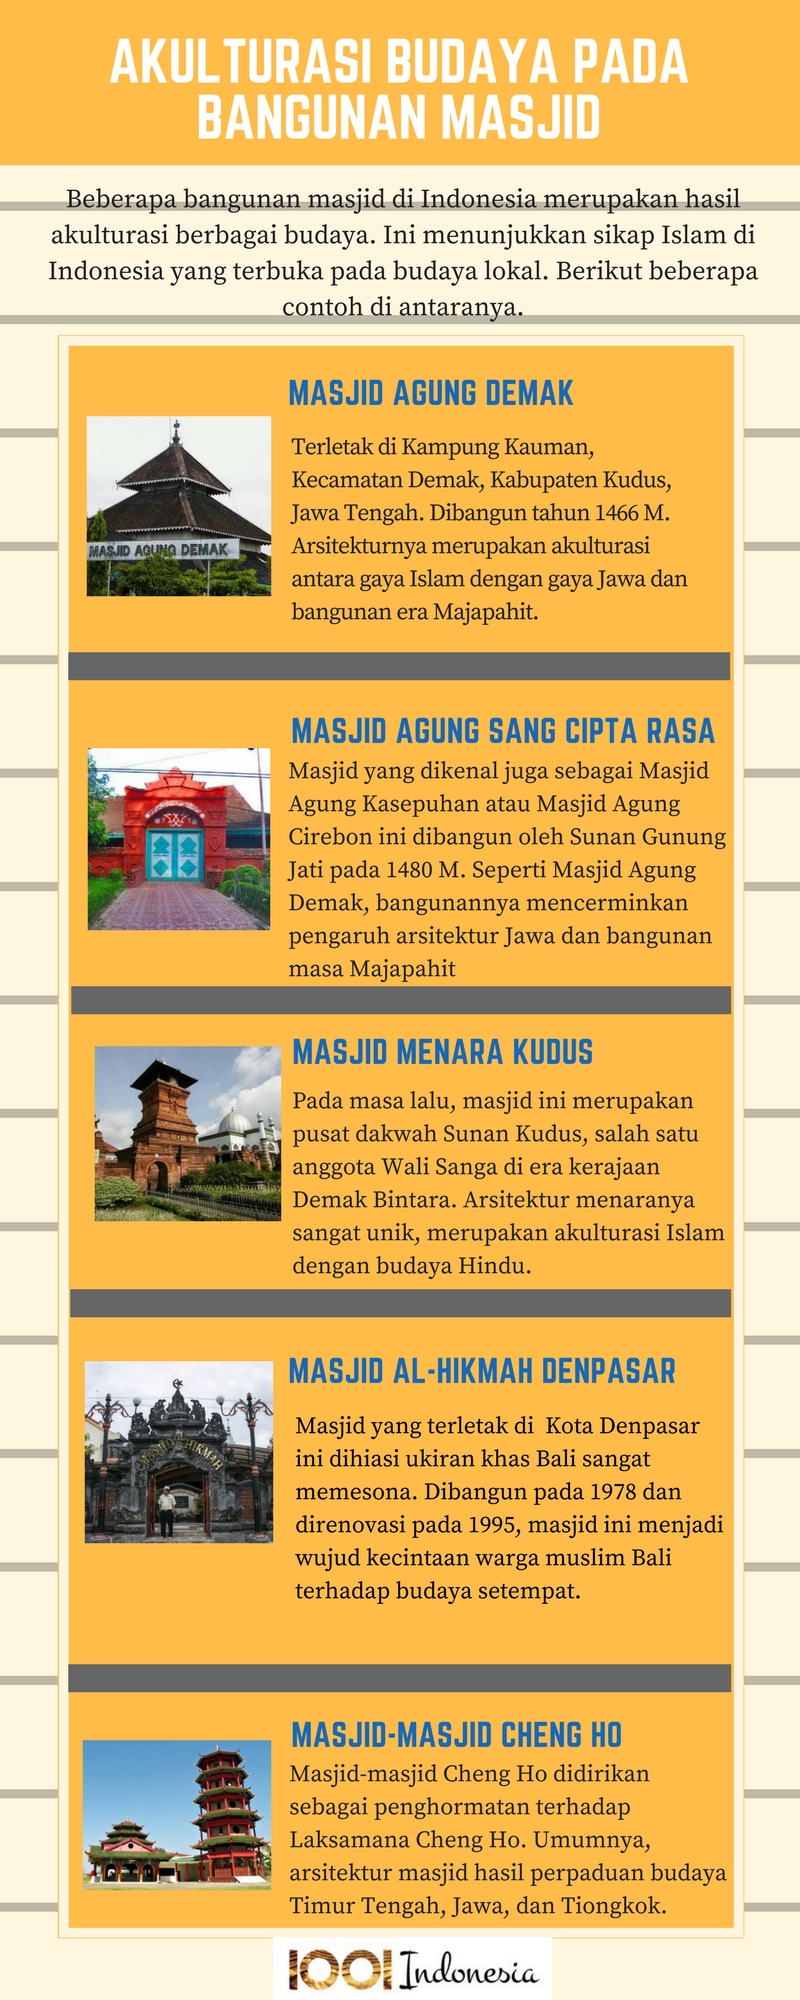 Akulturasi Budaya pada Bangunan Masjid di Indonesia